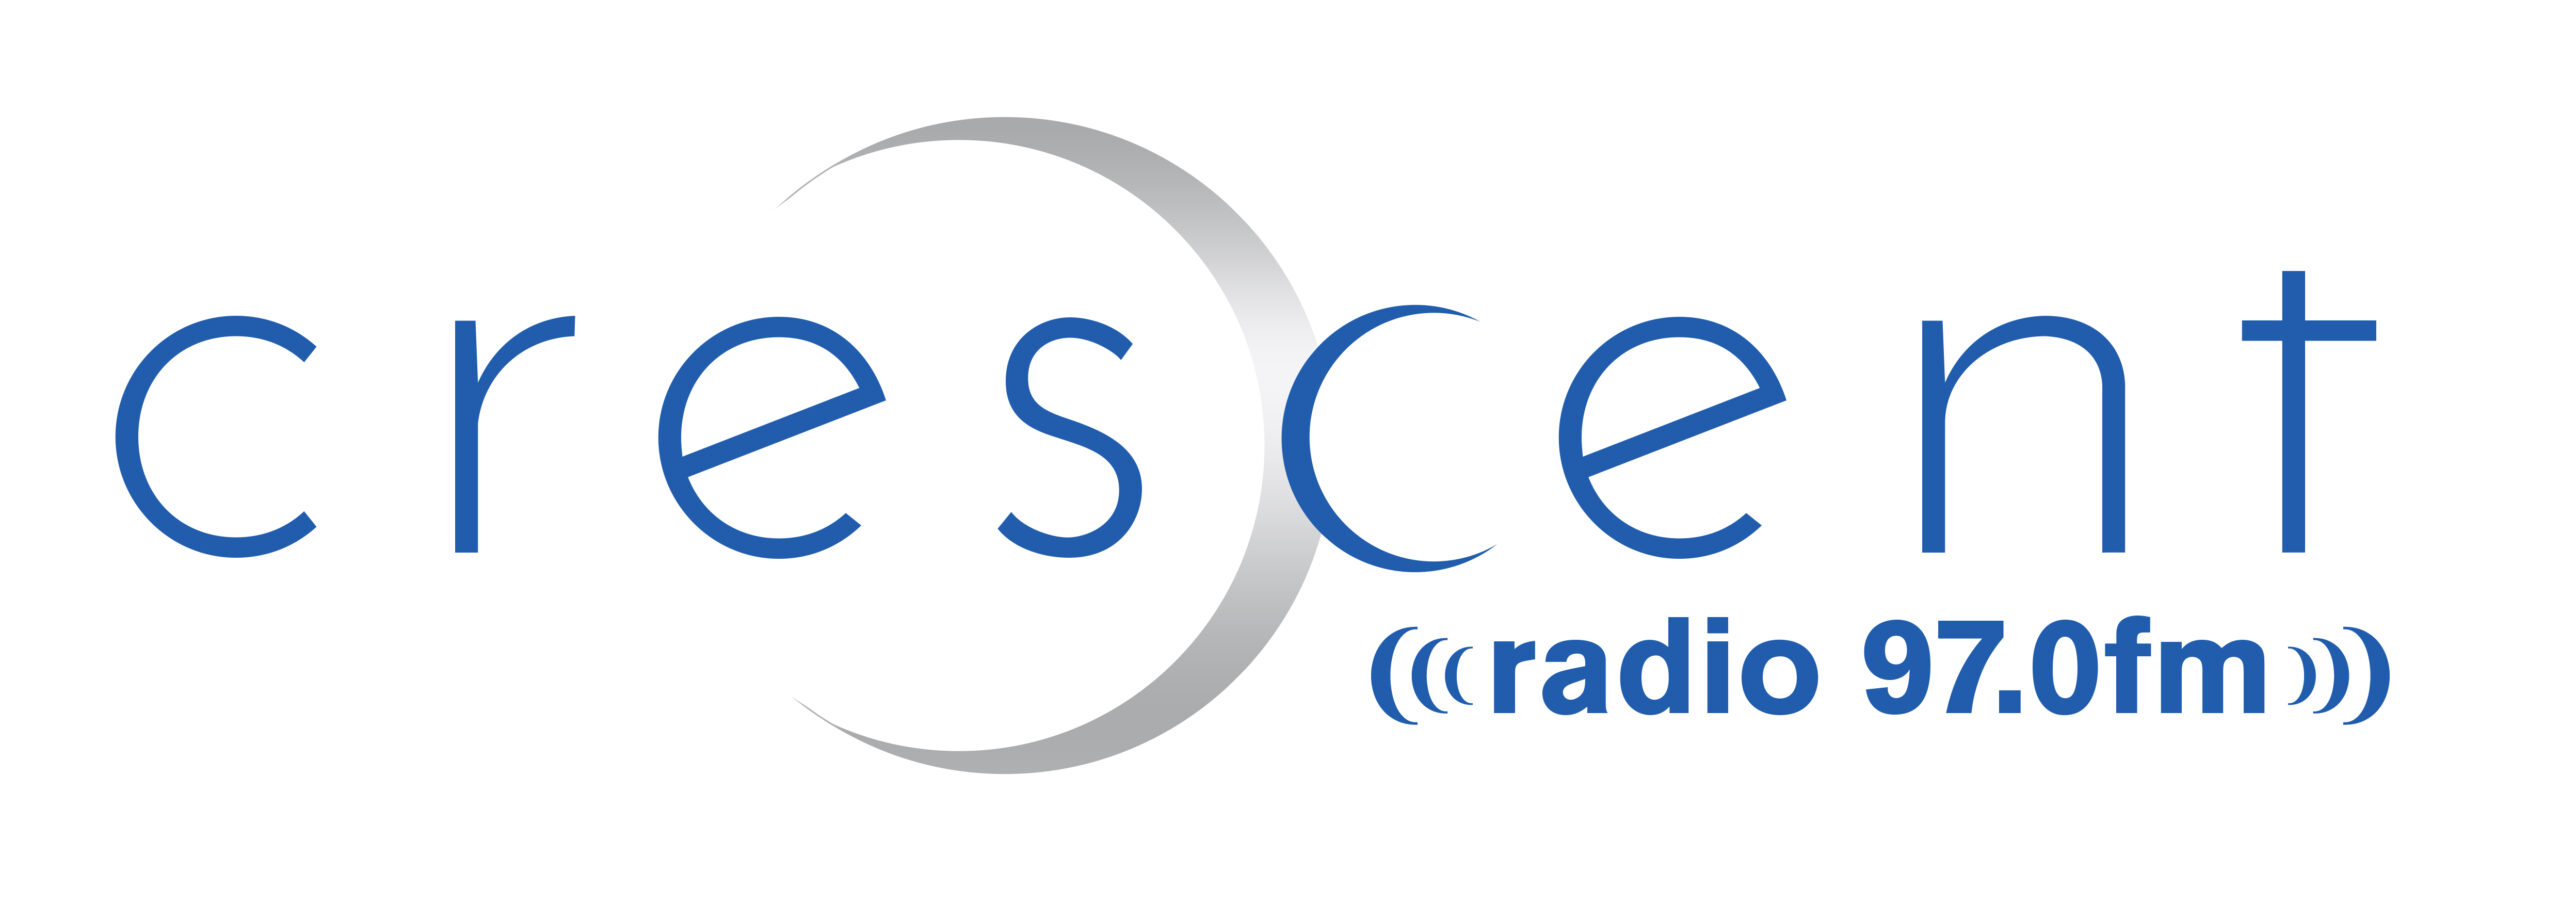 Crescent Community Radio 97FM